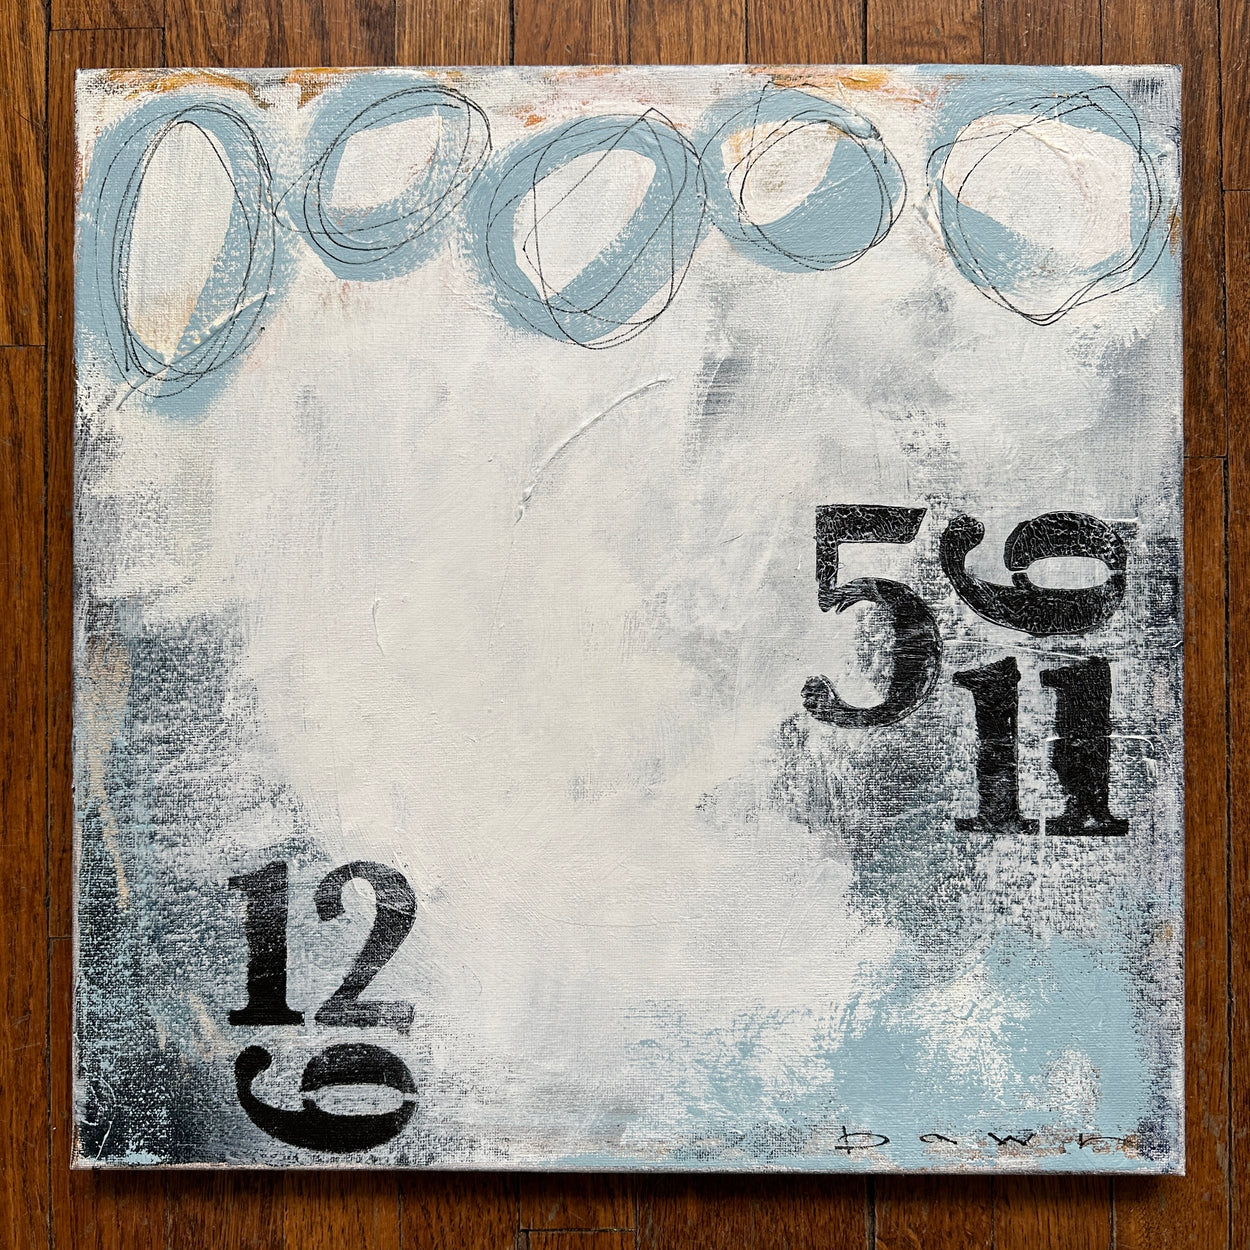 14”x14” acrylic on canvas